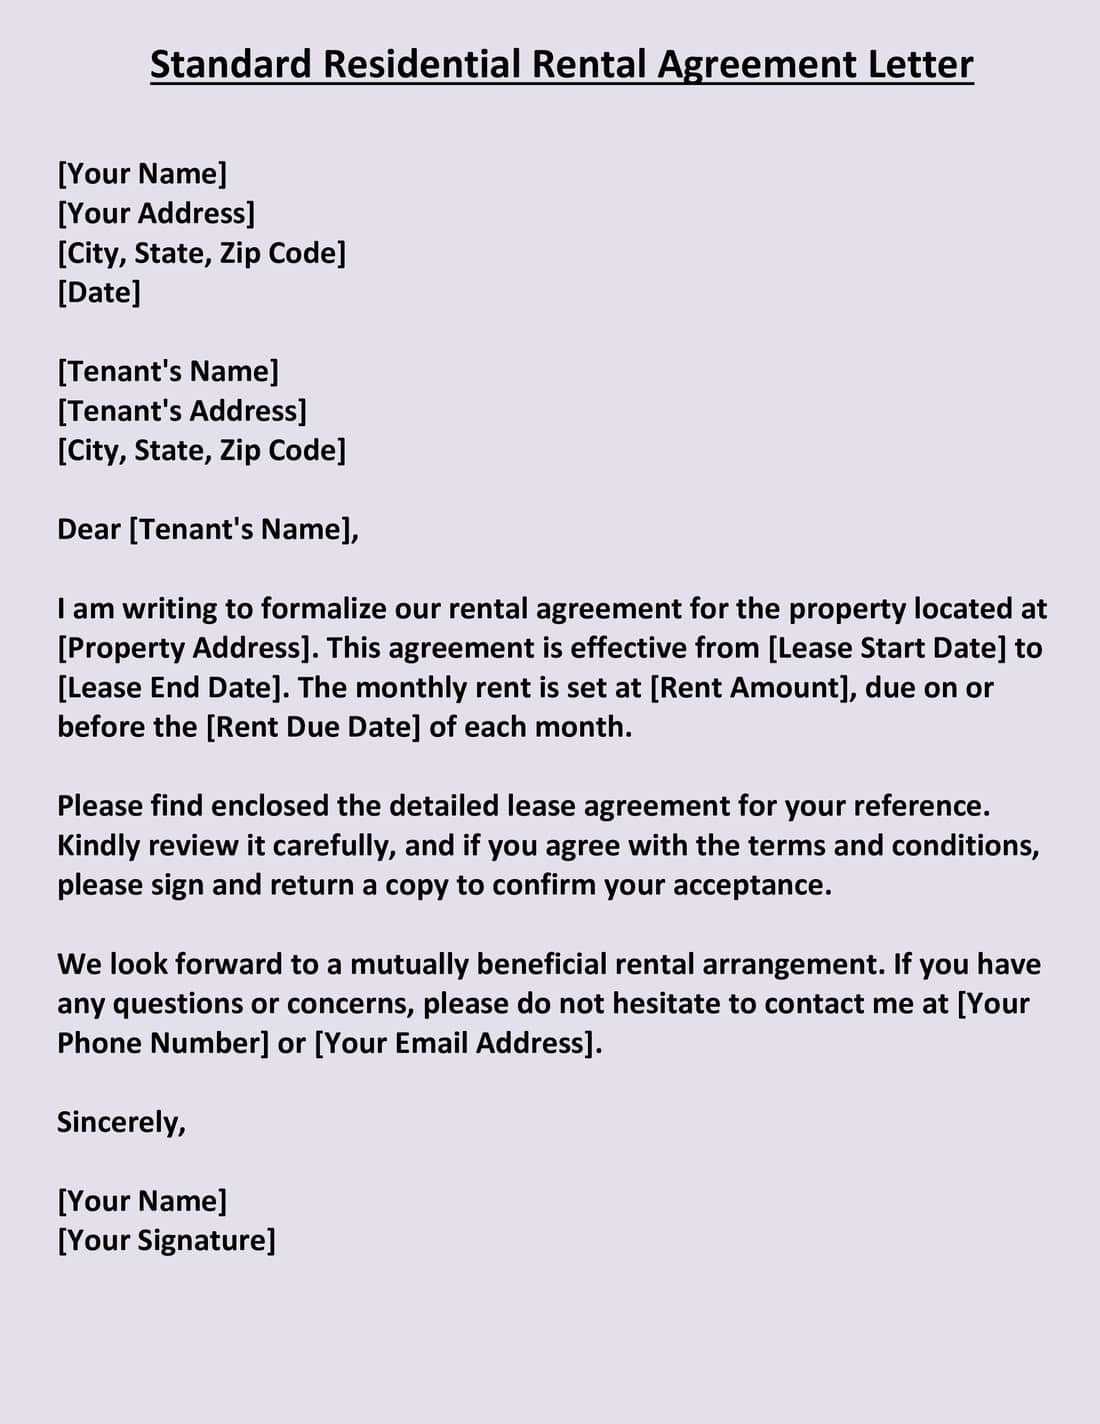 Standard Residential Rental Agreement Letter